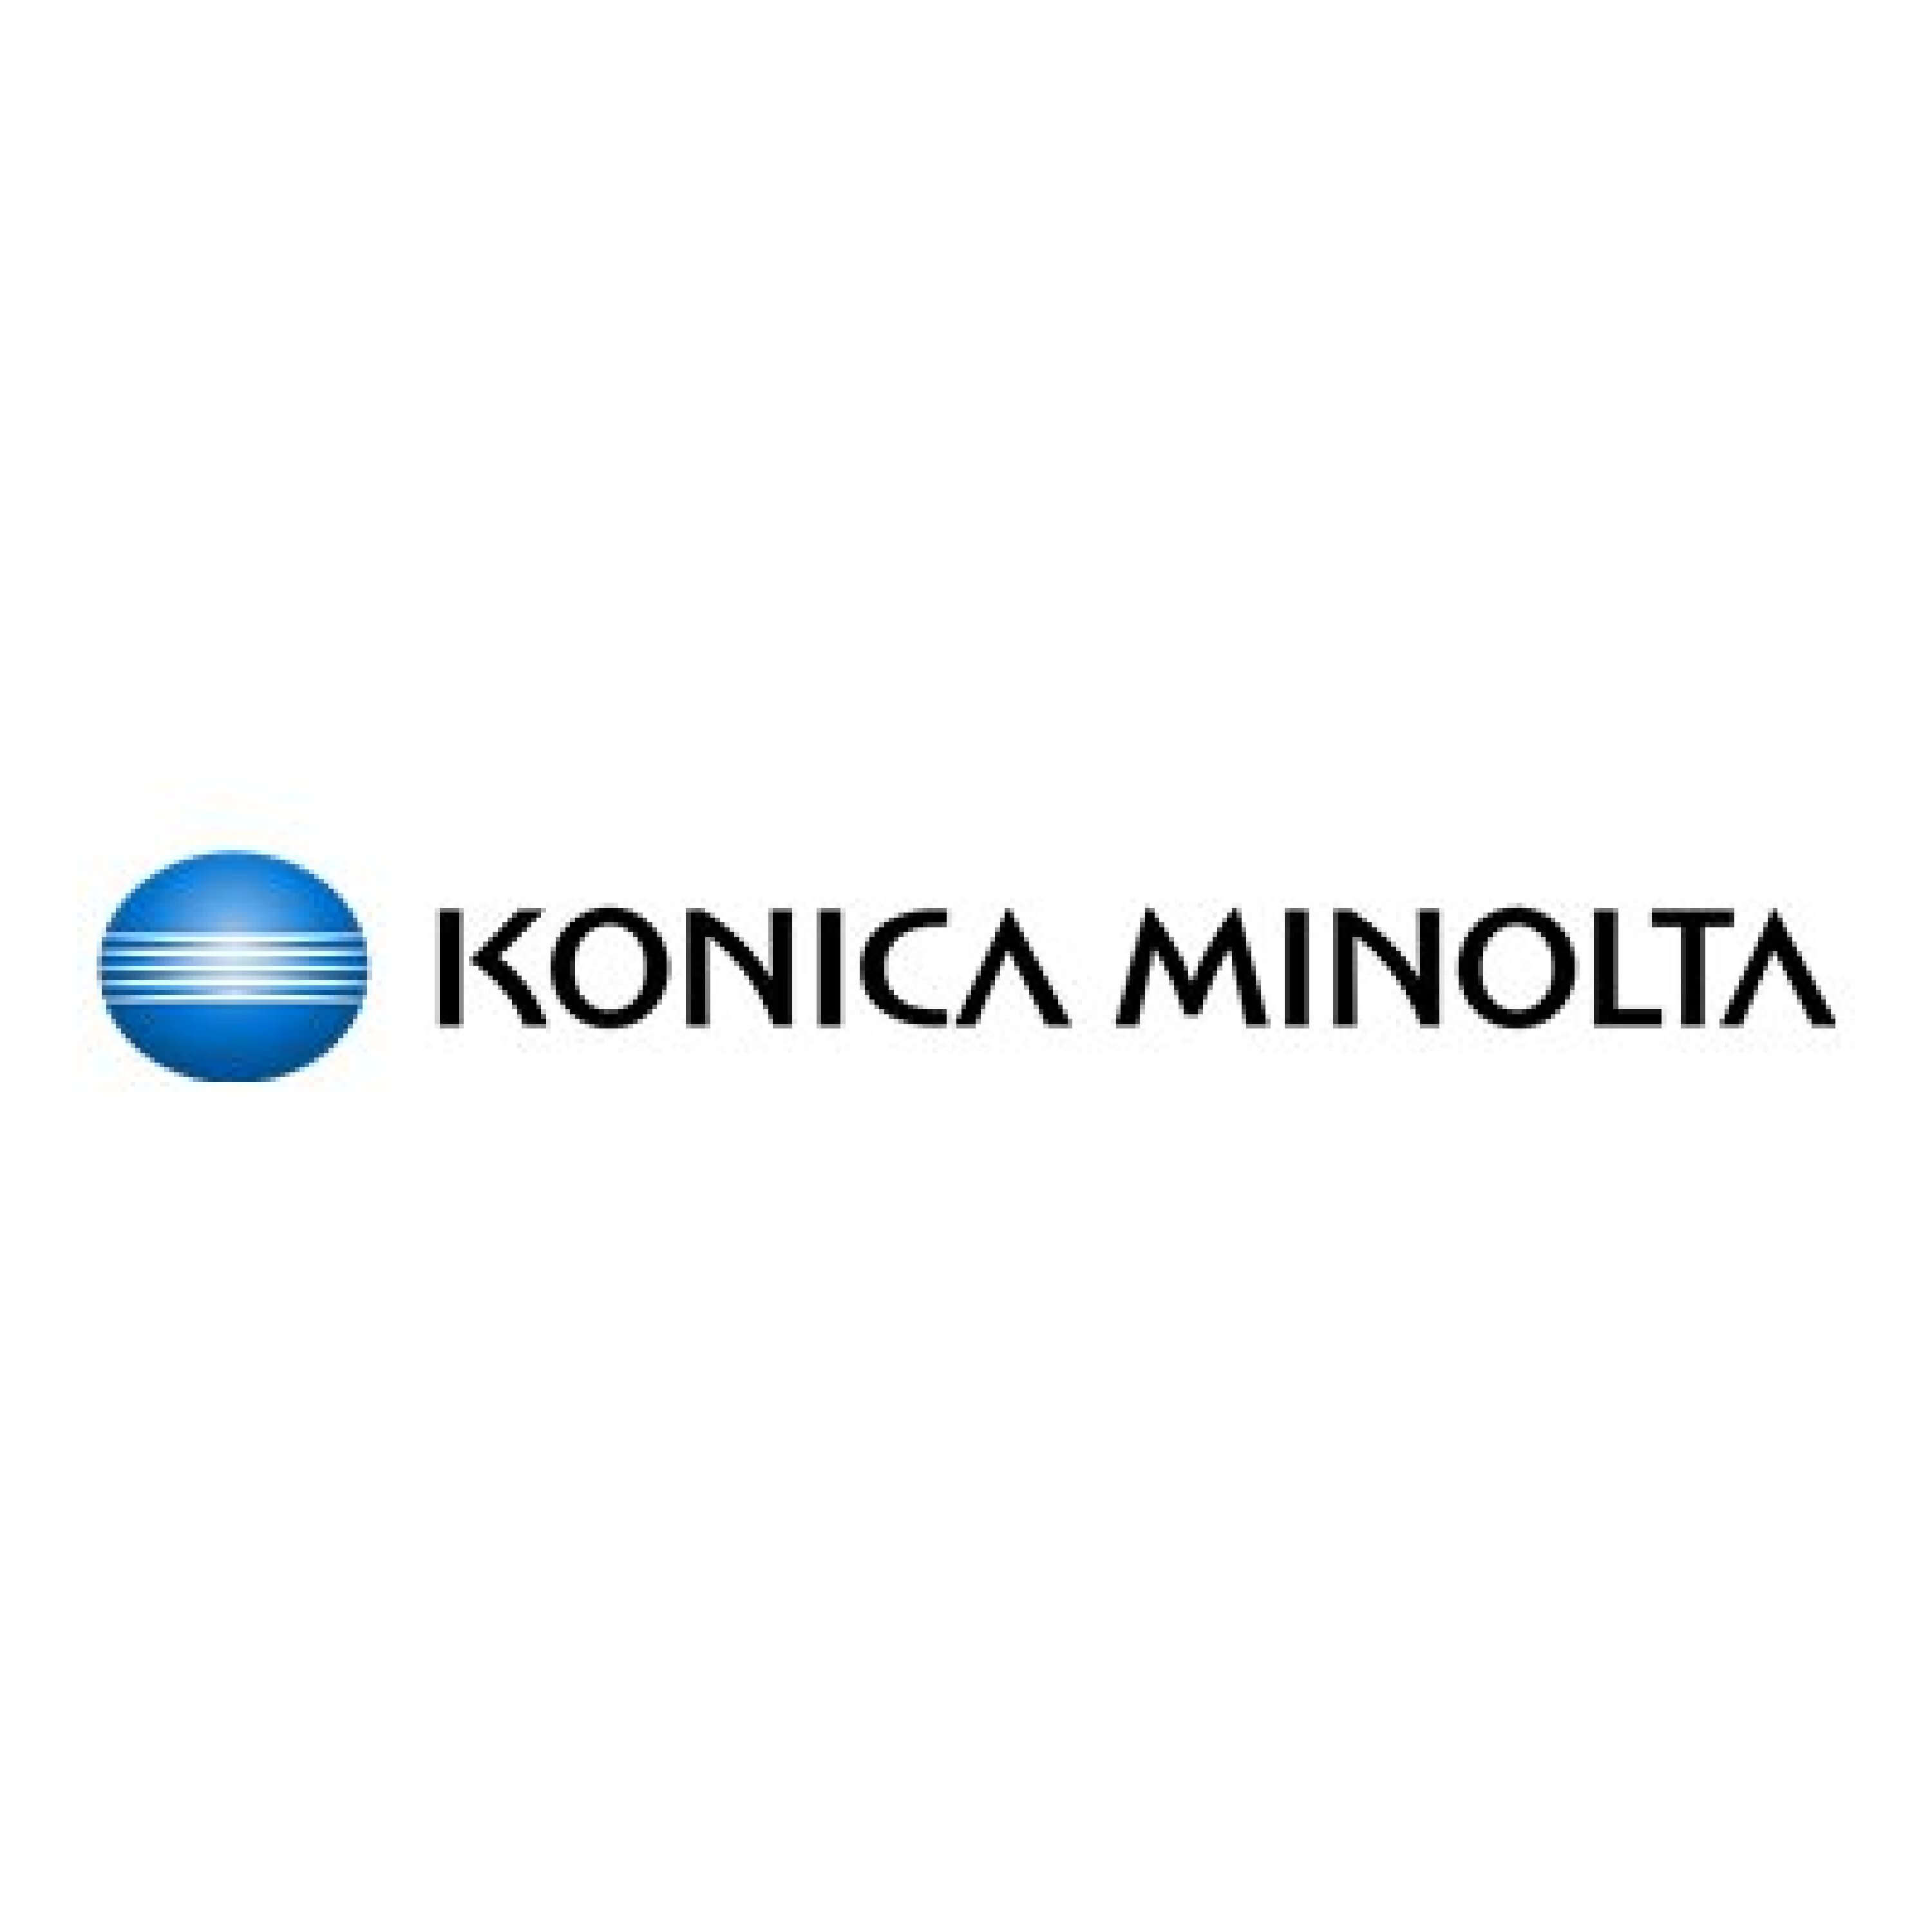 Original Toner Konica Minolta Bizhub Press C 3070 (A3VX450 / TN-619C) Cyan